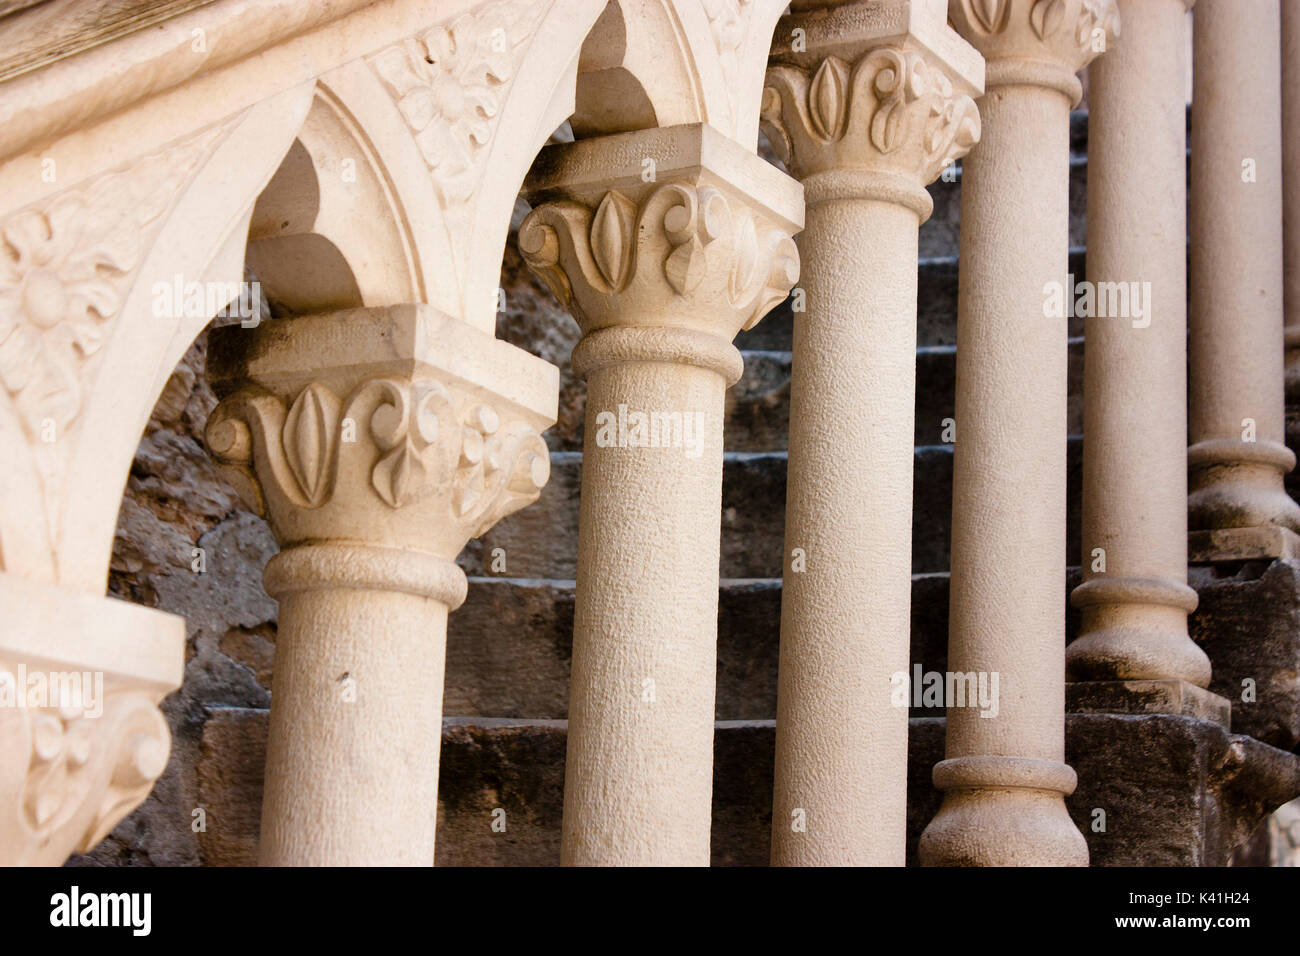 Architektonisches detail von einem Gebäude aus Stein, das in alten mediterranen Stadt Sibenik, Kroatien: geschnitzten Balustraden Säulen auf Treppe Stockfoto